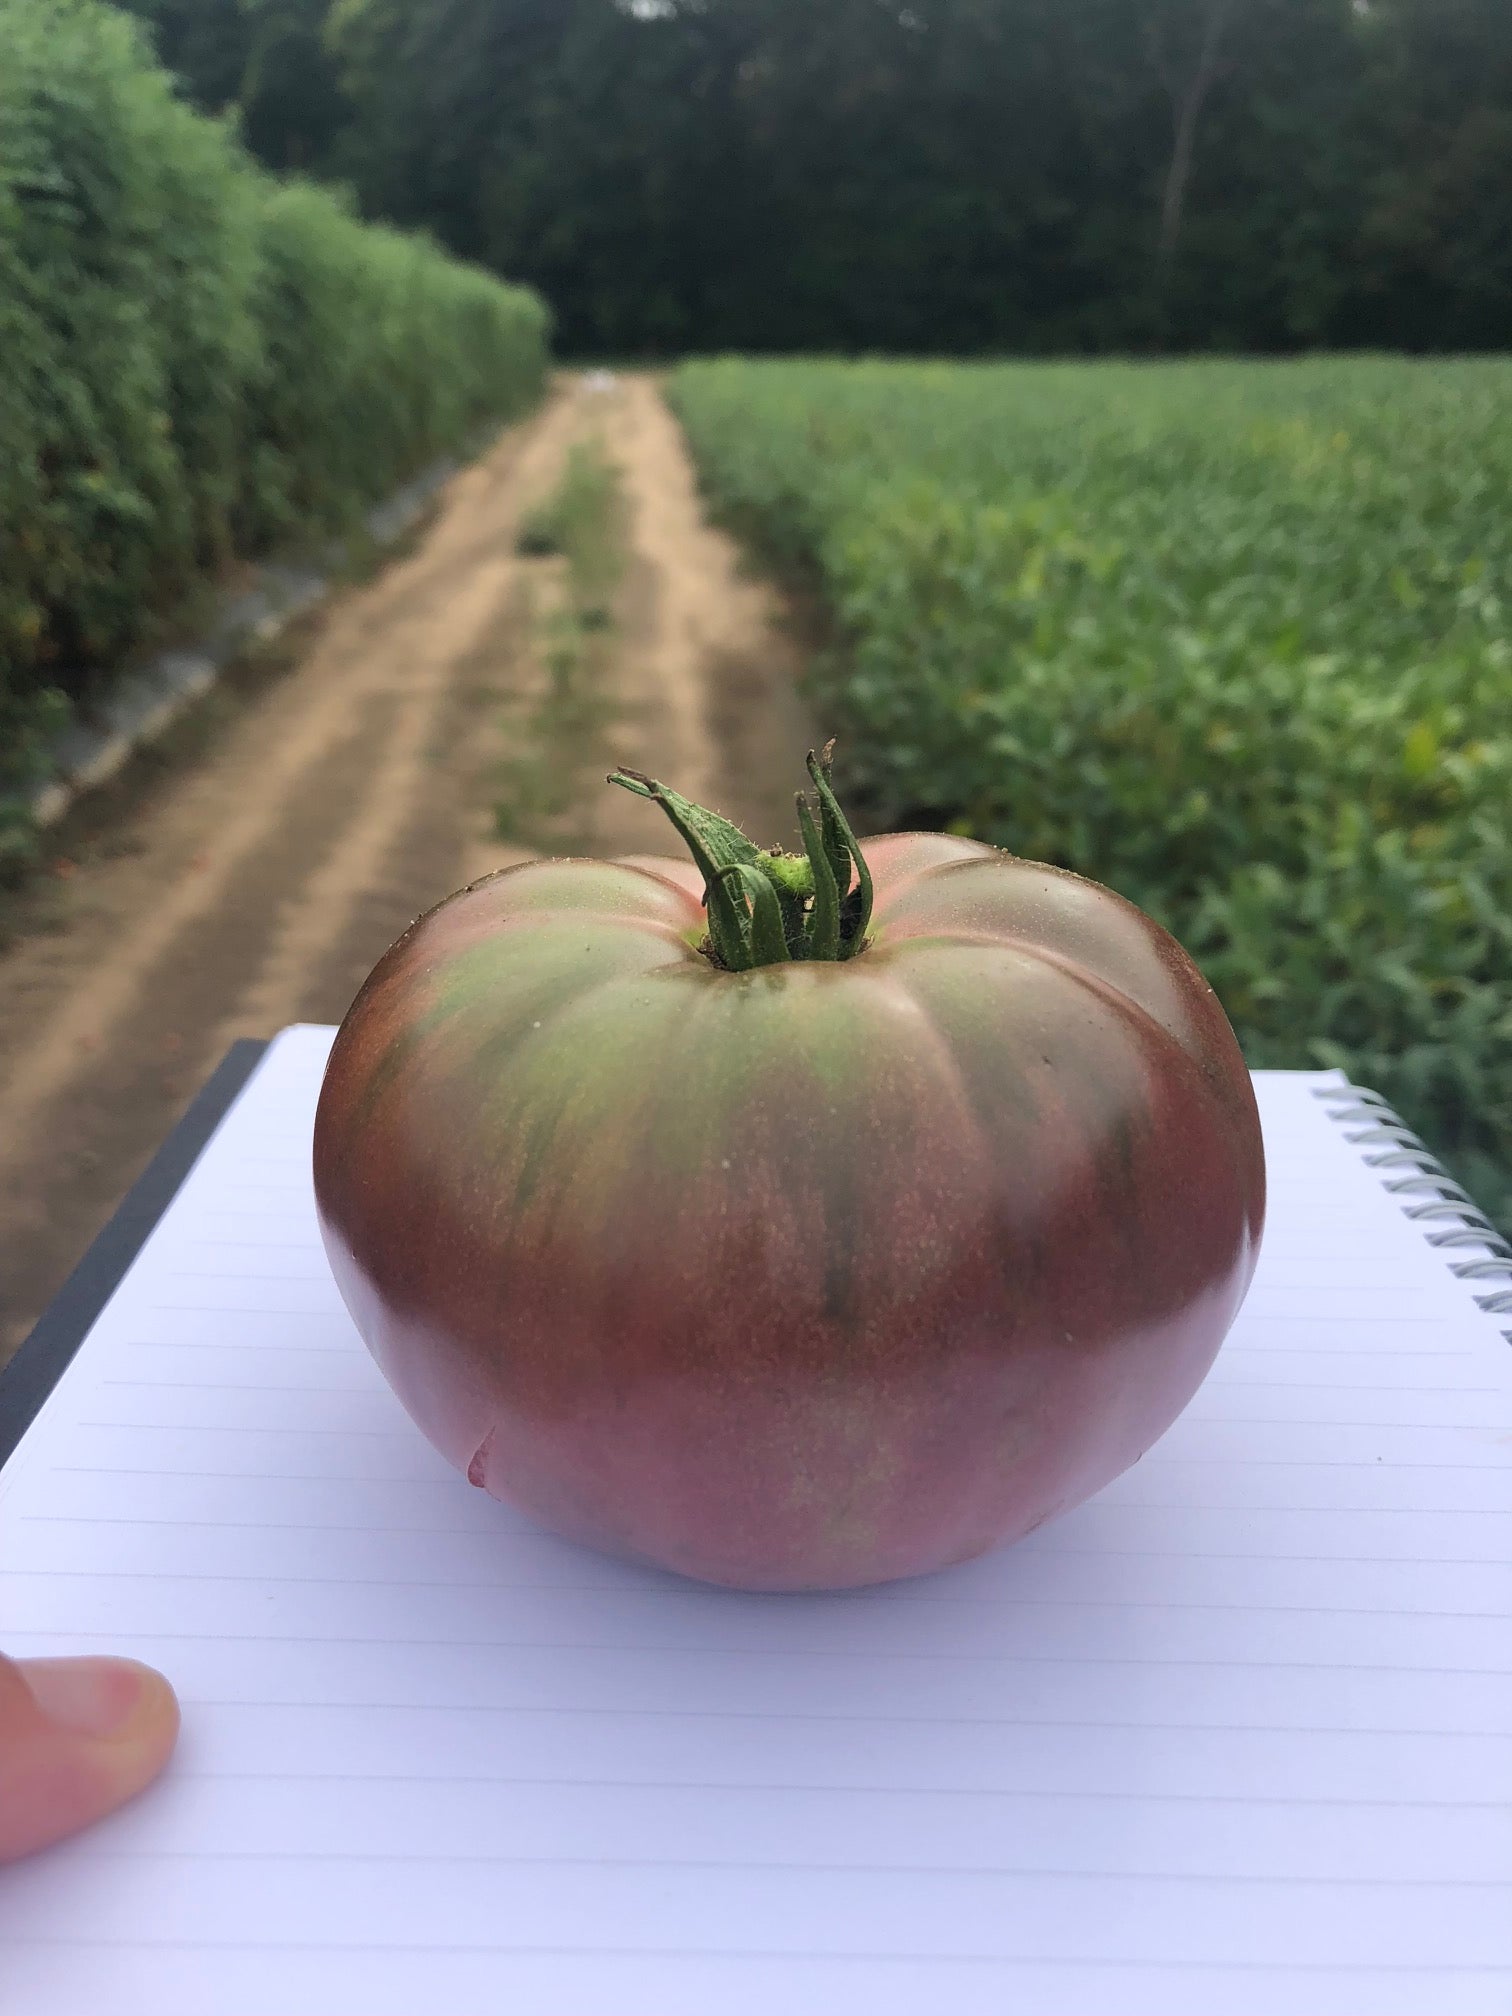 Darkstar Hybrid Tomato